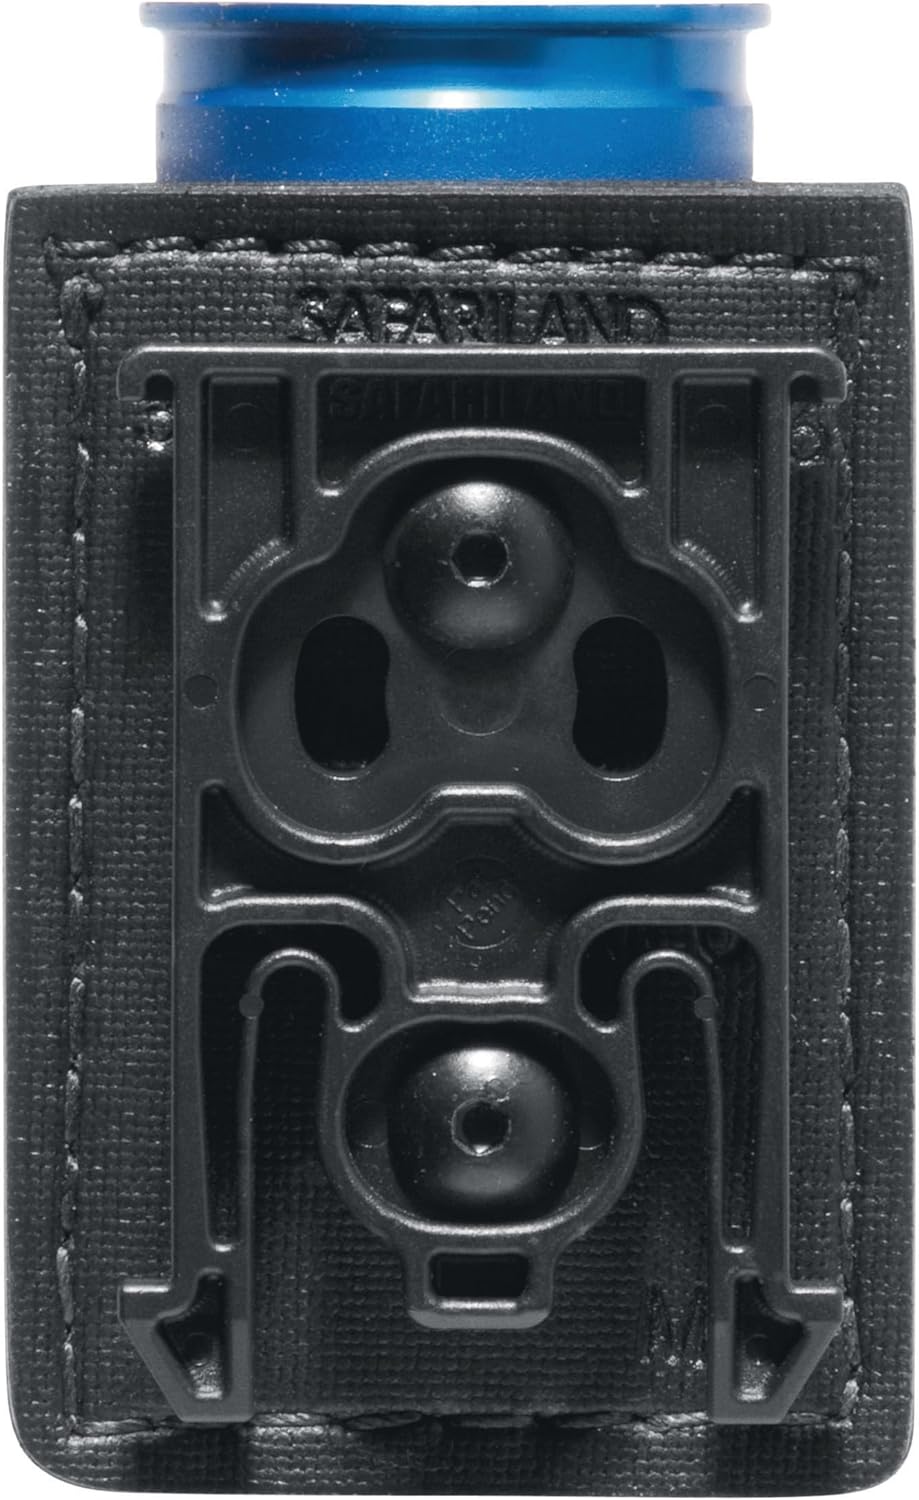 Safariland, 9006524 Safariland Equipment Locking System Kit